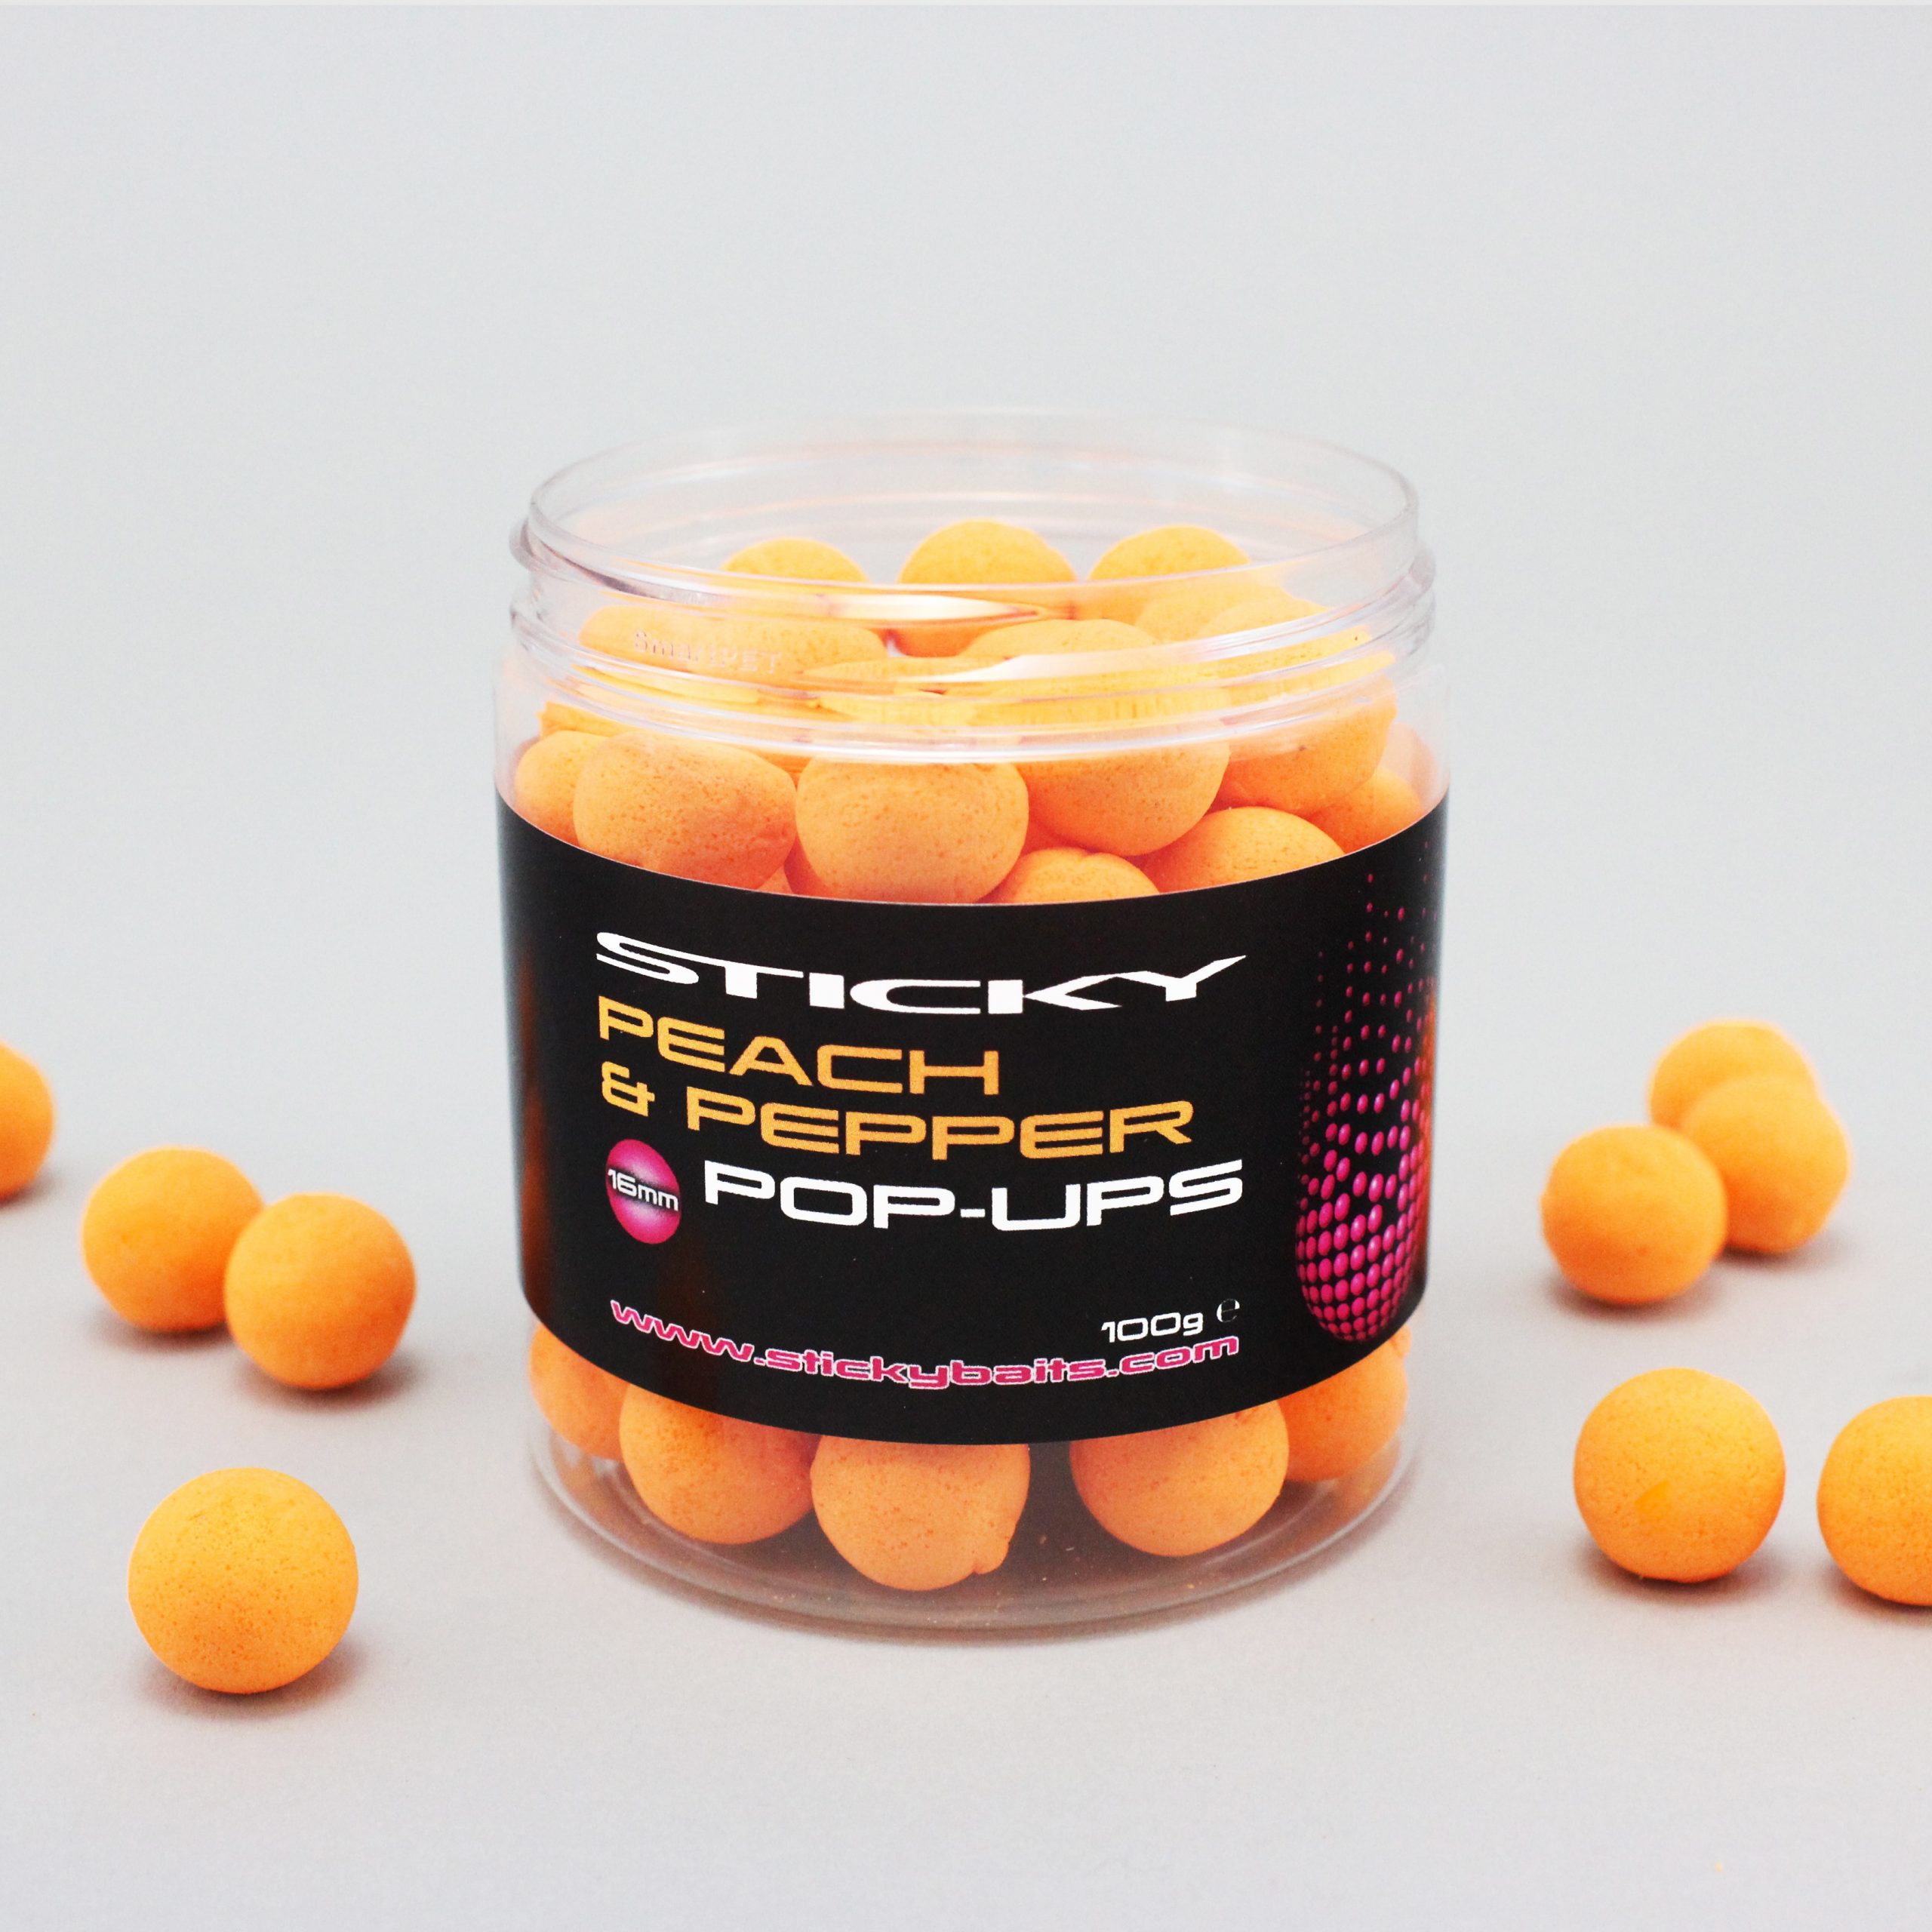 Sticky_peach